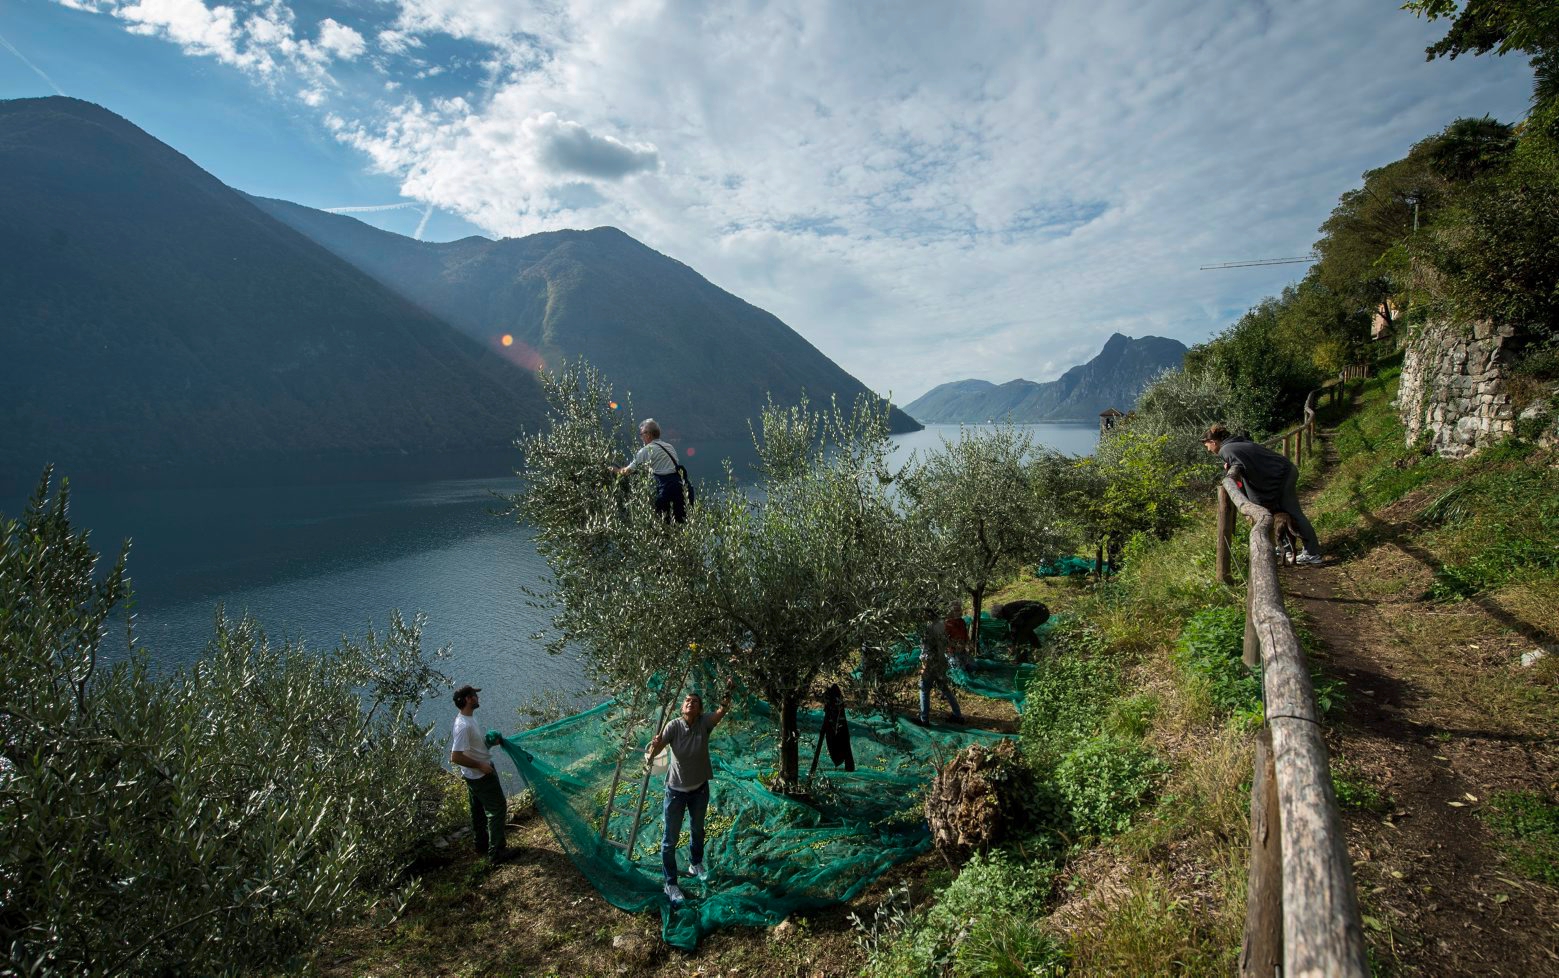 Olivenlese im Olivenbaumpfad am Hang des Monte Bre in Gandria oberhalb des Lago di Lugano (Luganersee), aufgenommen am 26. Oktober 2013. Der Pfad fuehrt durch eine Landschaft, in dem zwischen den Resten antiker Olivenhaine junge Olivenbaeume neu angepflanzt worden sind. Von den insgesamt 150 Olivenbaeumen konnten dieses Jahr rund 600 Kilogramm Fruechte geerntet werden, 40 Prozent mehr als im Vorjahr. Die daraus gewonnenen 50 Liter Olivenoel sollen dann spaeter auf dem Markt von Gandria verkauft werden. (KEYSTONE/Ti-Press/Gabriele Putzu) SCHWEIZ OLIVENLESE